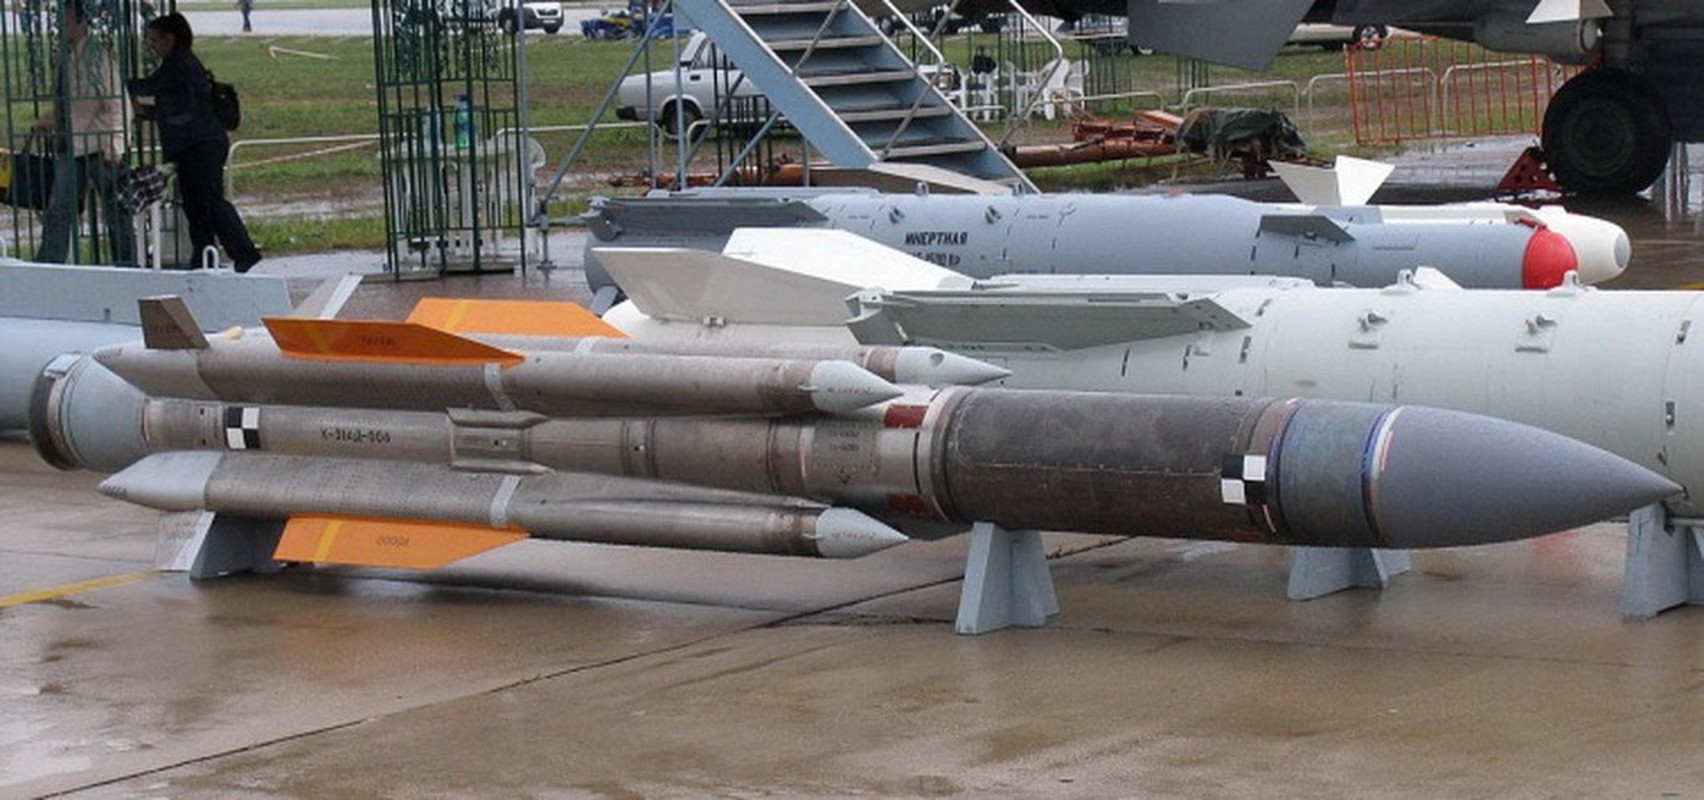 Venezuela de doa dung Su-30MK2 mang ten lua Kh-31 ban ha tau chien My-Hinh-9